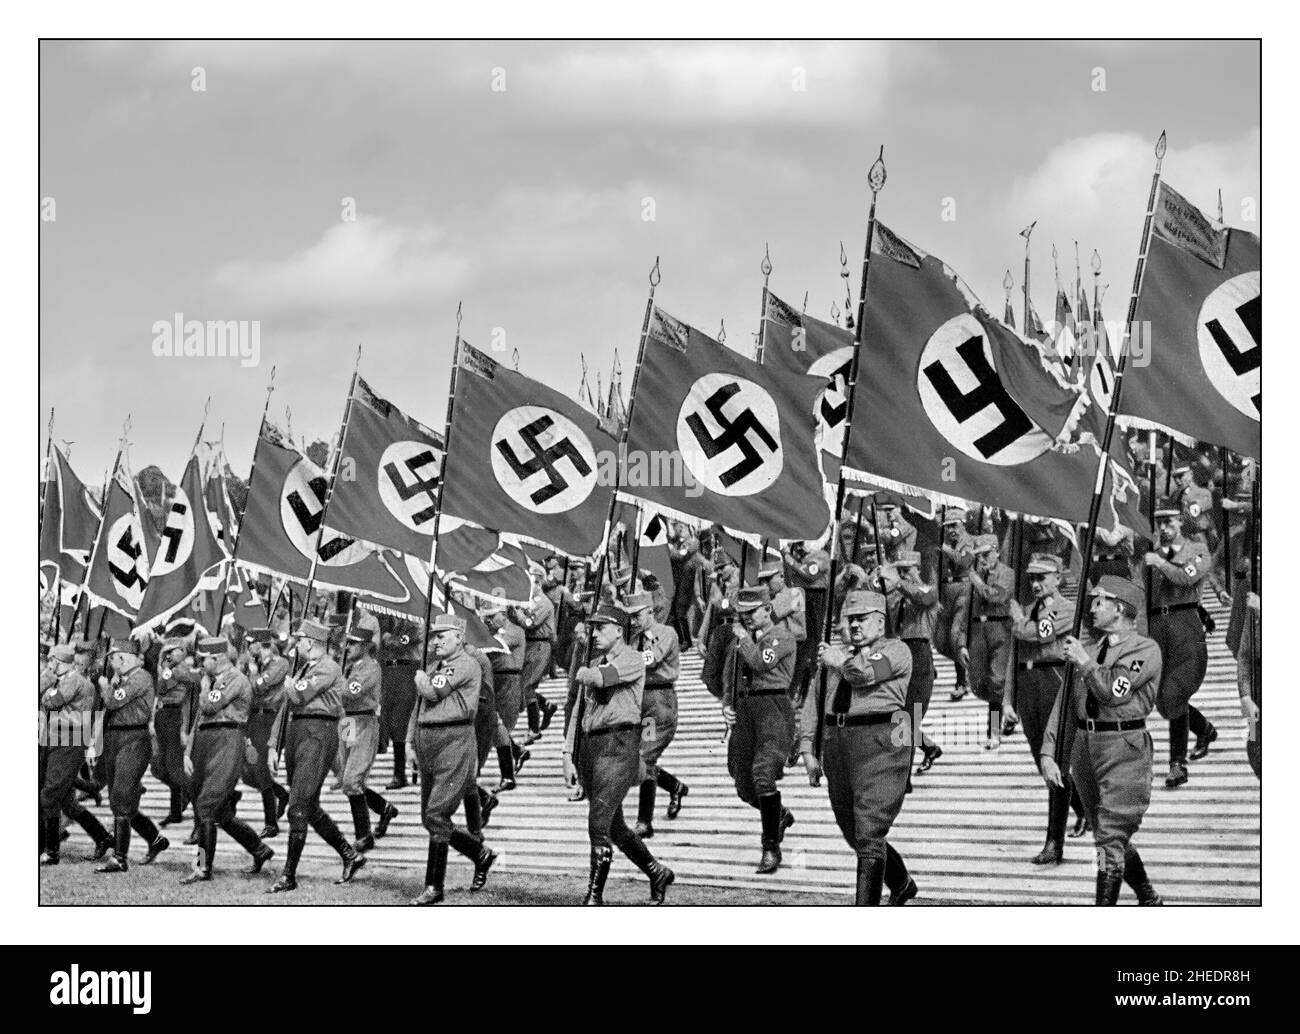 Le Sturmabteilung, ou sa, une organisation paramilitaire associée au Parti nazi.S.A. stormtroopers, ou « brownshirts », à Nuremberg en Allemagne, swastika porte-drapeau lors de la fête des nazis à Nuremberg en 1933.Le Sturmabteilung était l'aile paramilitaire originale du Parti nazi.Il a joué un rôle important dans l'accession au pouvoir d'Adolf Hitler en 1920s et 1930s. Banque D'Images